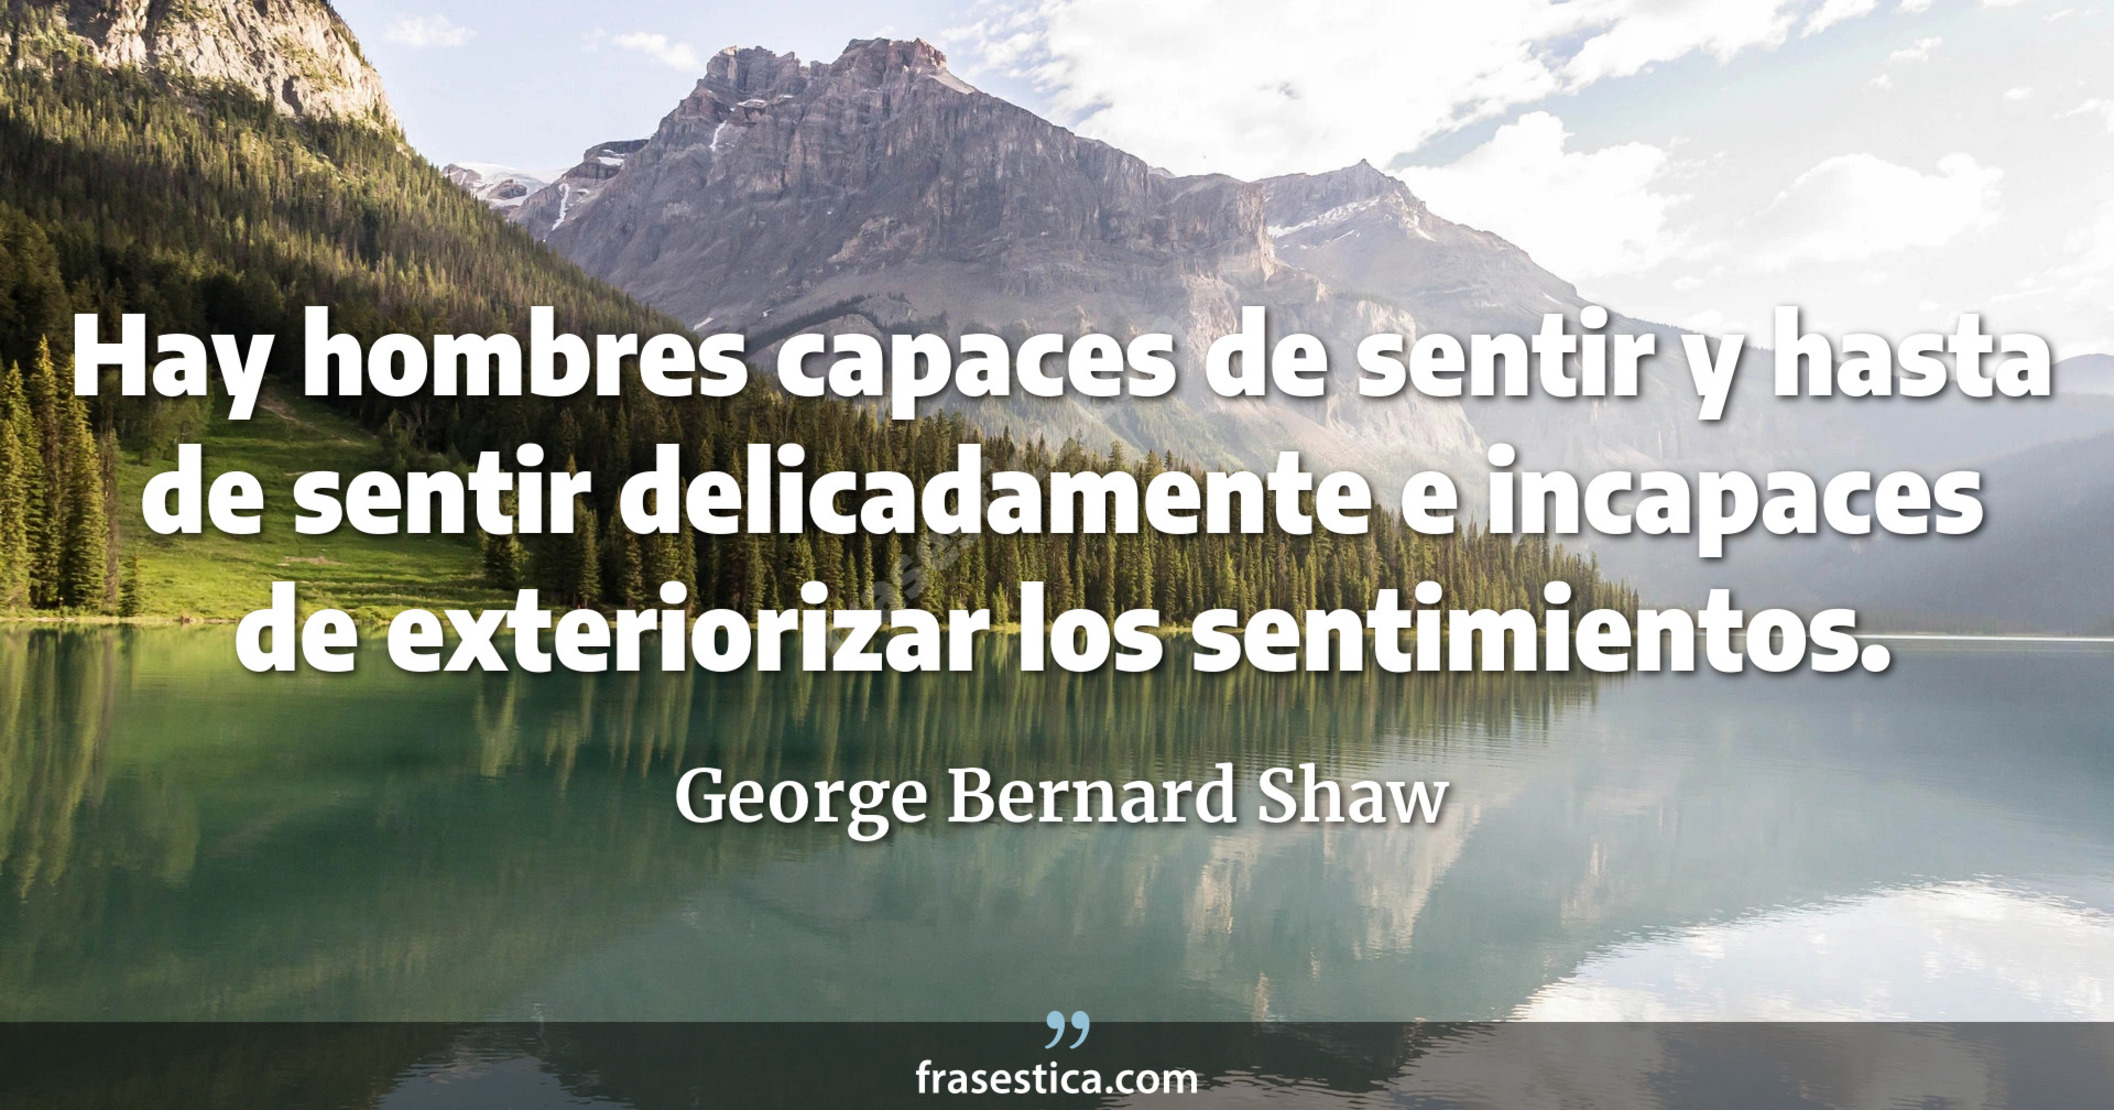 Hay hombres capaces de sentir y hasta de sentir delicadamente e incapaces de exteriorizar los sentimientos. - George Bernard Shaw